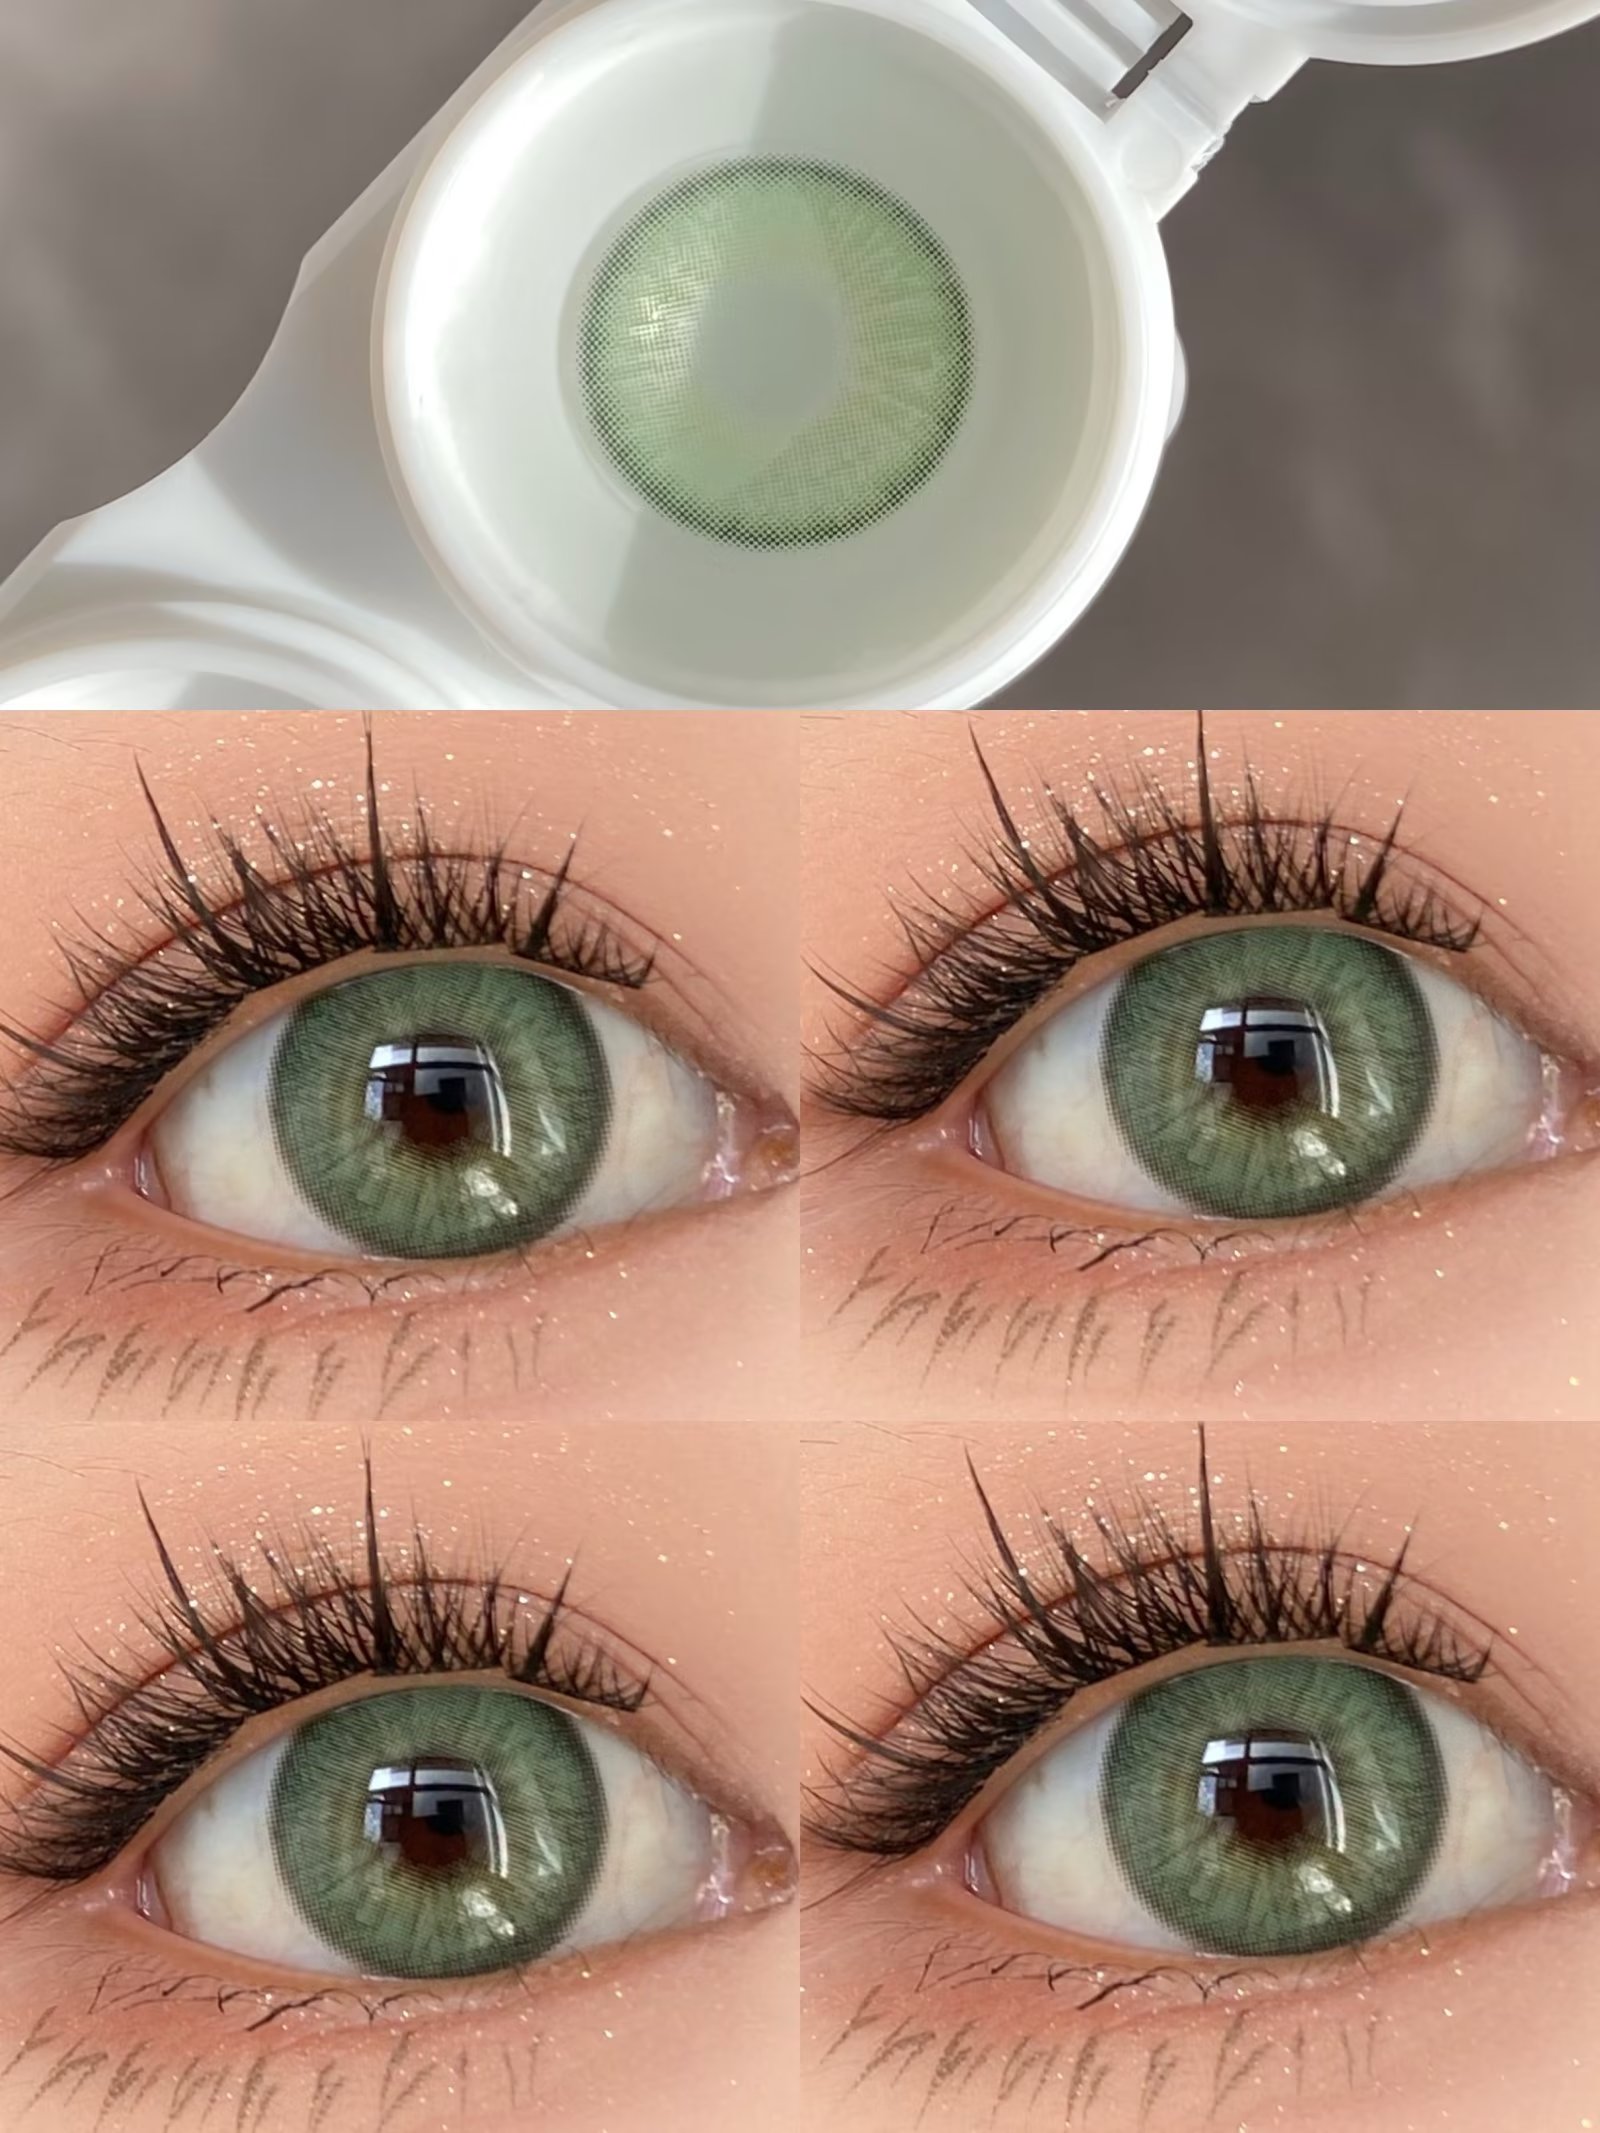 ALLECON 年抛隐形眼镜 橘绿之泉 14.0mm 1副/2片 左右度数可不同 - VVCON美瞳网